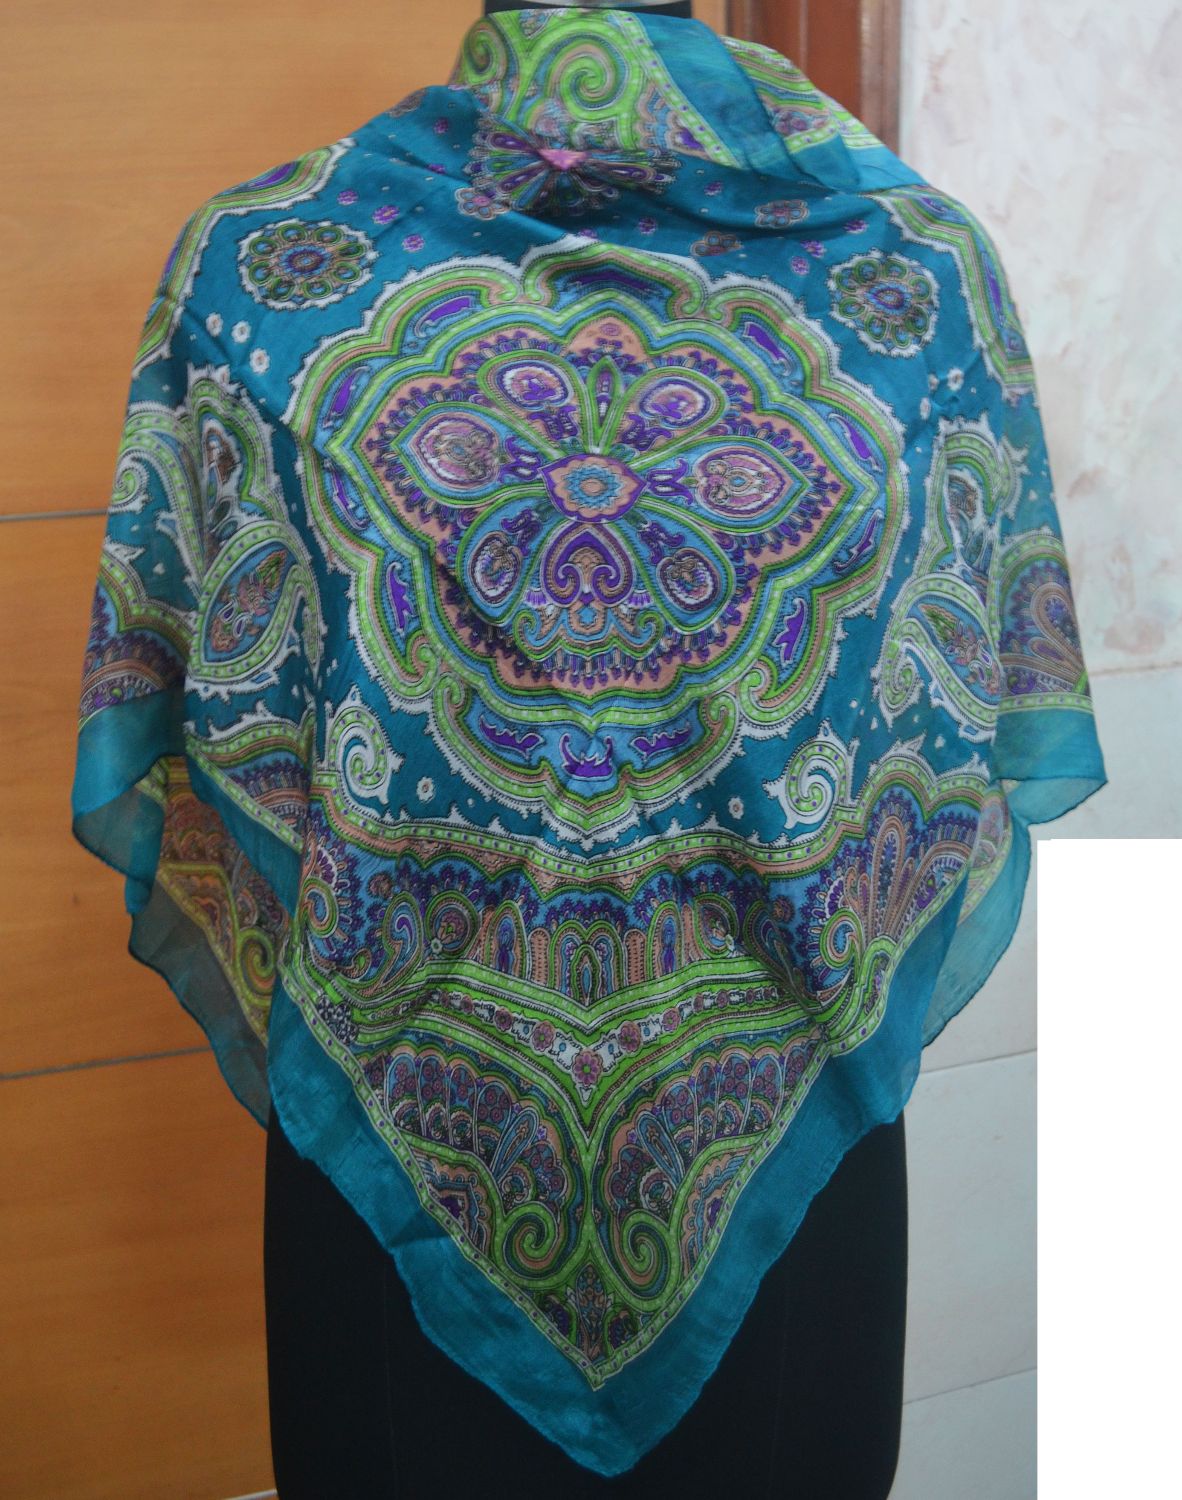 Printed Silk Square Pashmina Scarves | Bandhanas | Pareos